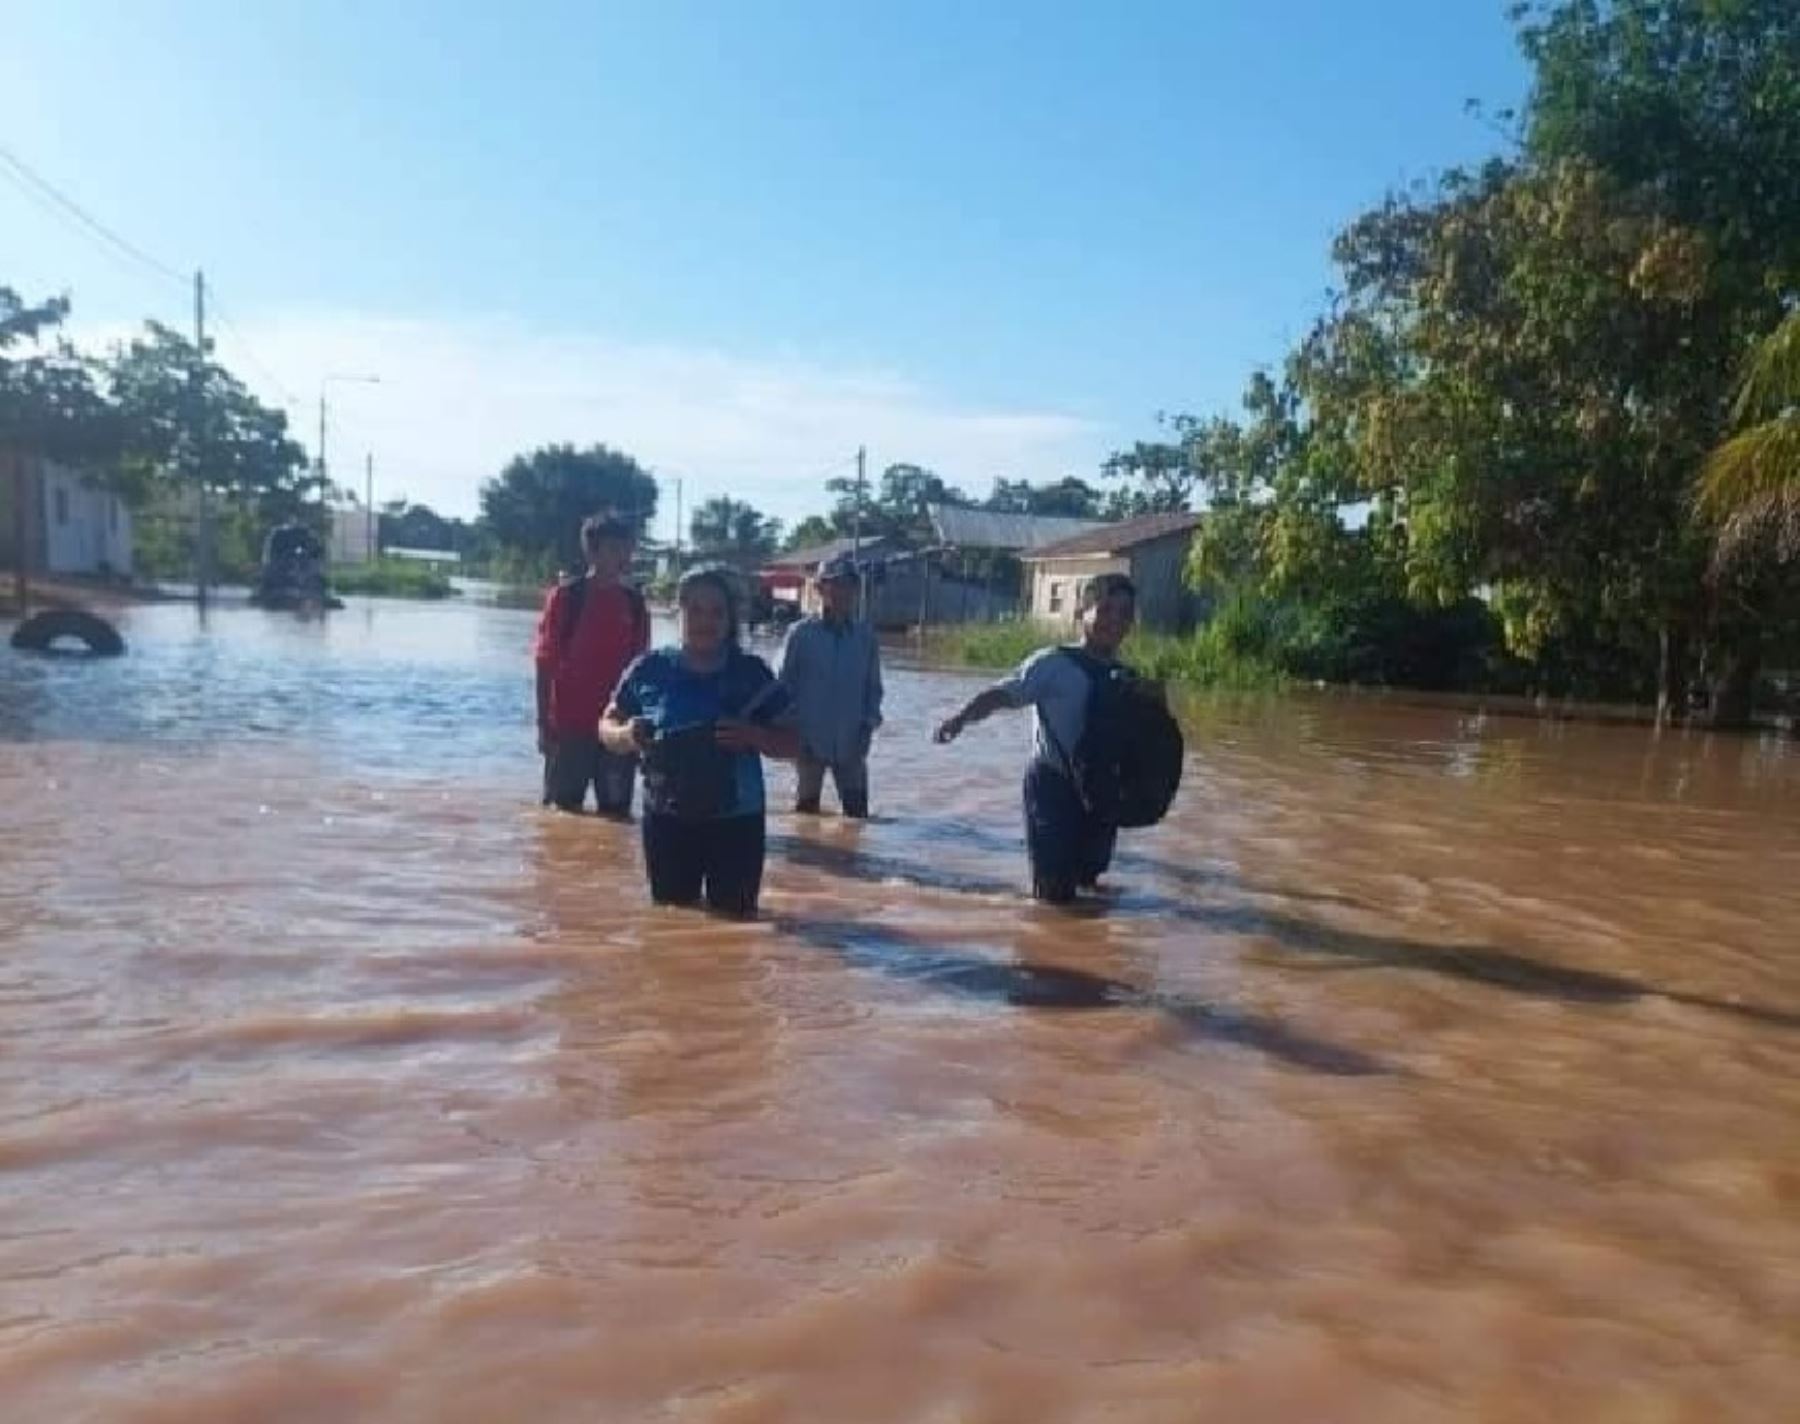 El desborde del río Ucayali causó cuantiosos daños en viviendas y en un establecimiento de salud en el distrito de Nueva Requena, región Ucayali. Foto: cortesía Zona Pucallpa Noticias/Facebook.